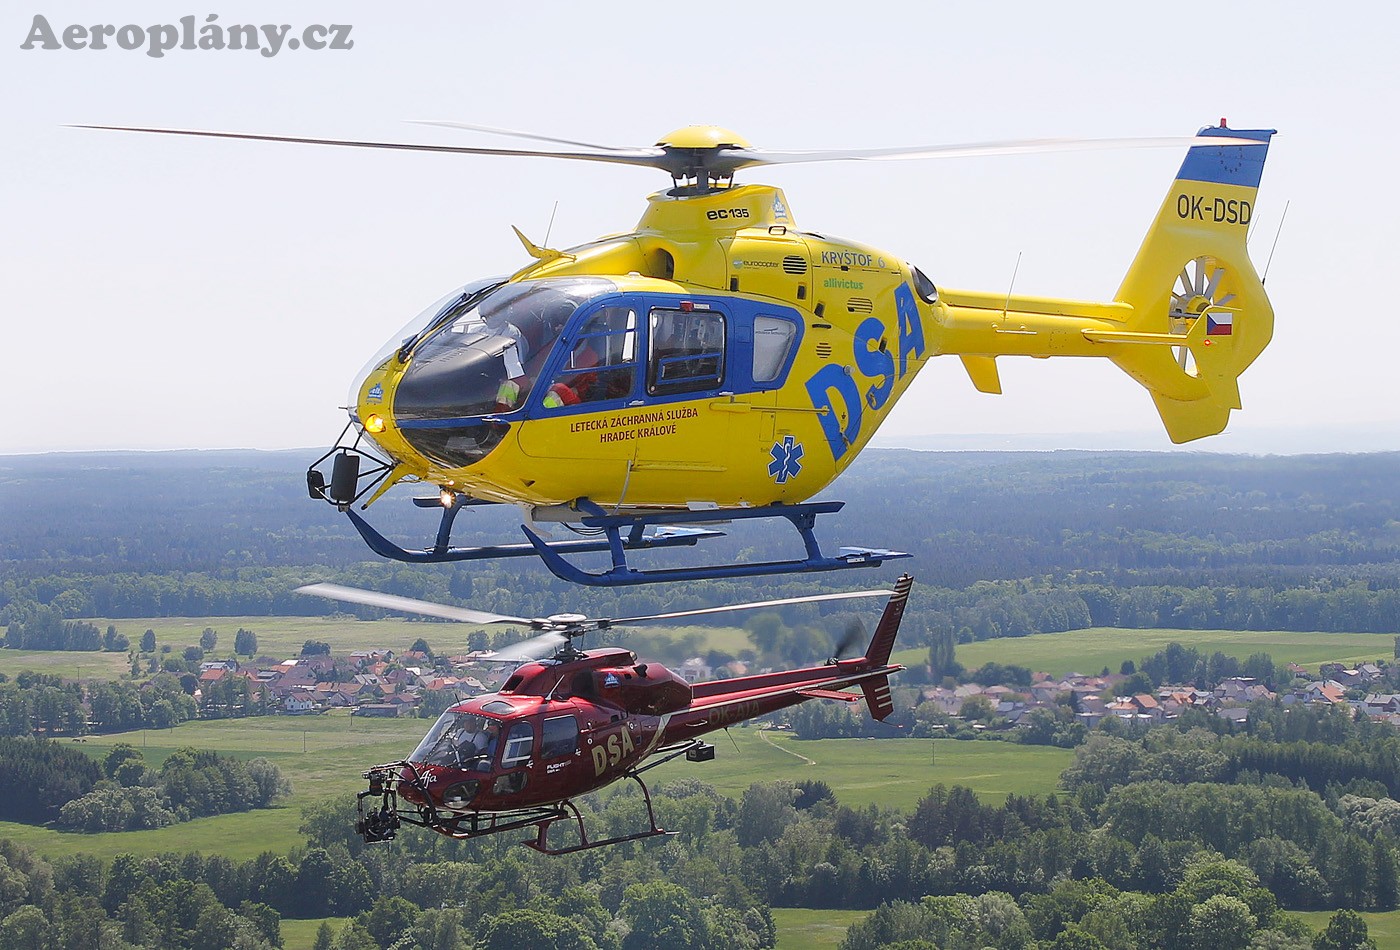 OK-DSD Eurocopter EC135T2